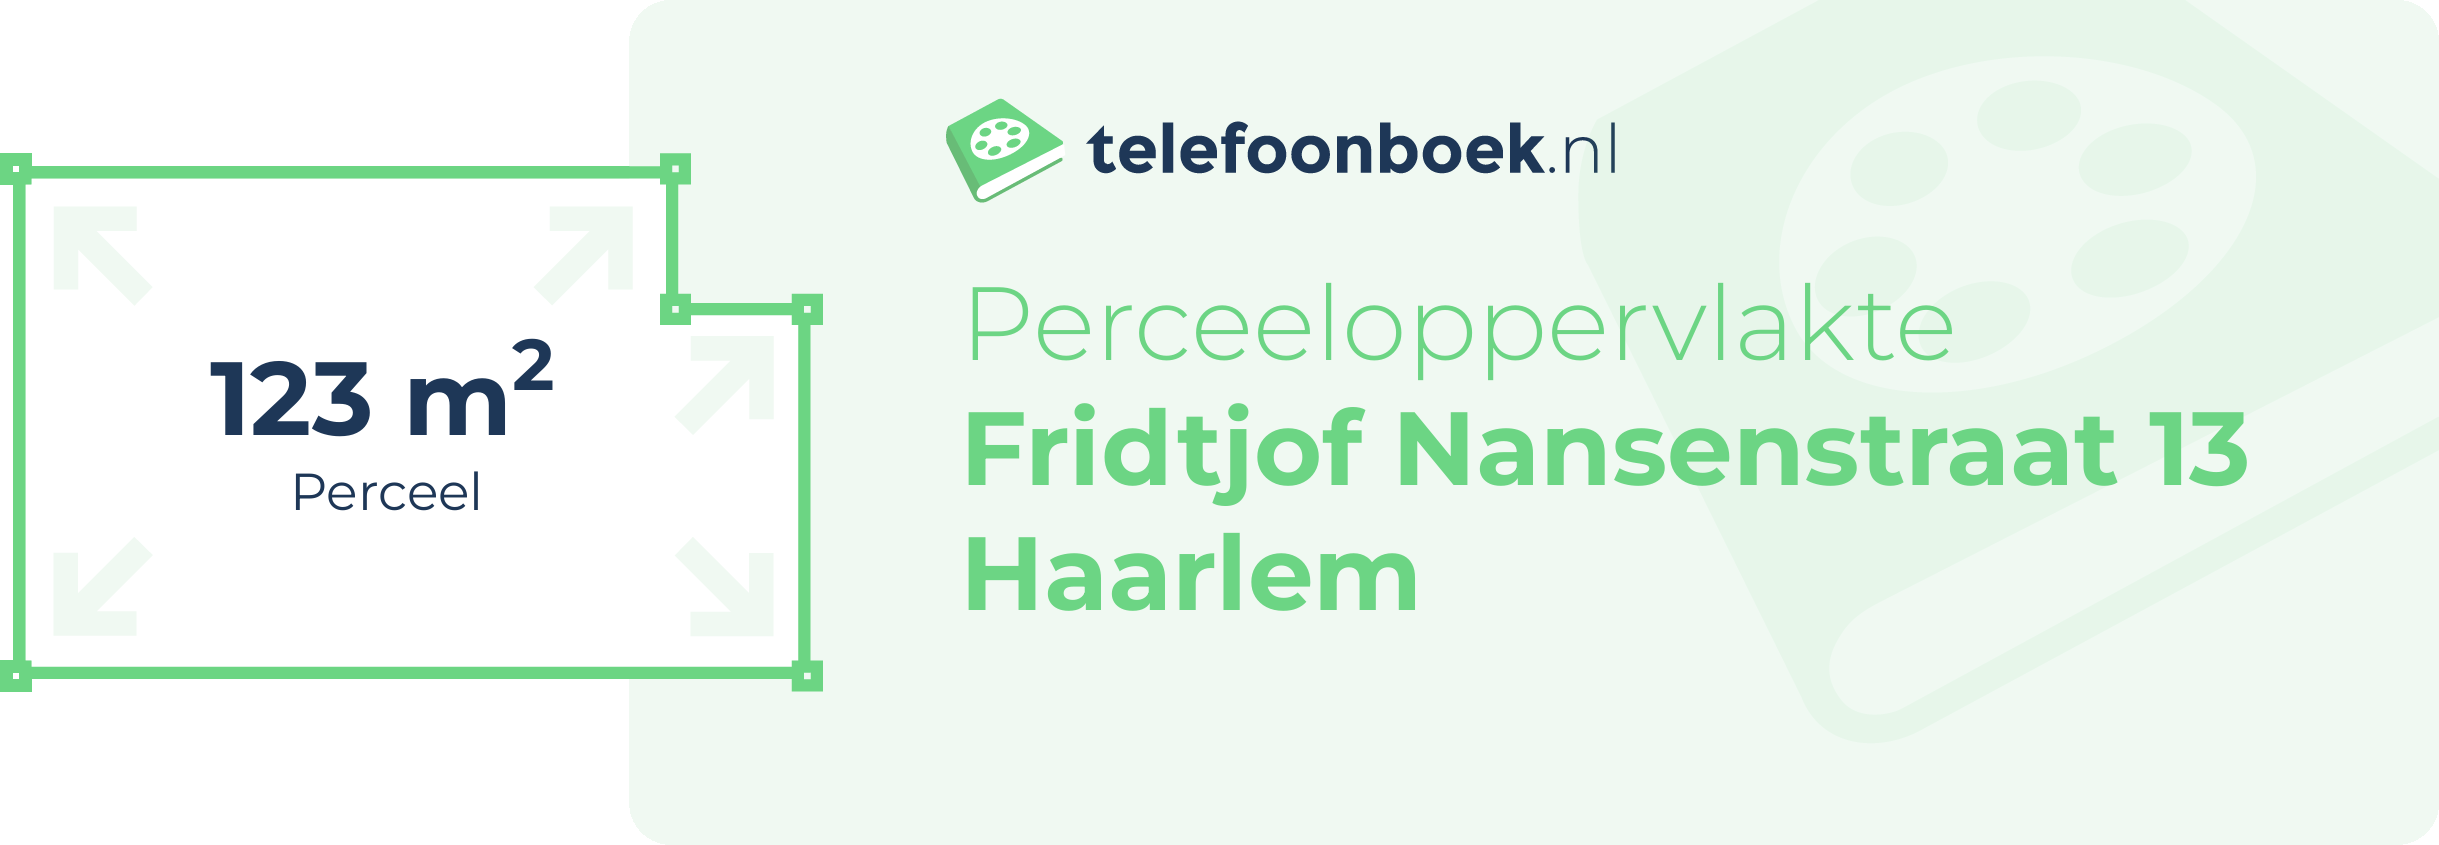 Perceeloppervlakte Fridtjof Nansenstraat 13 Haarlem